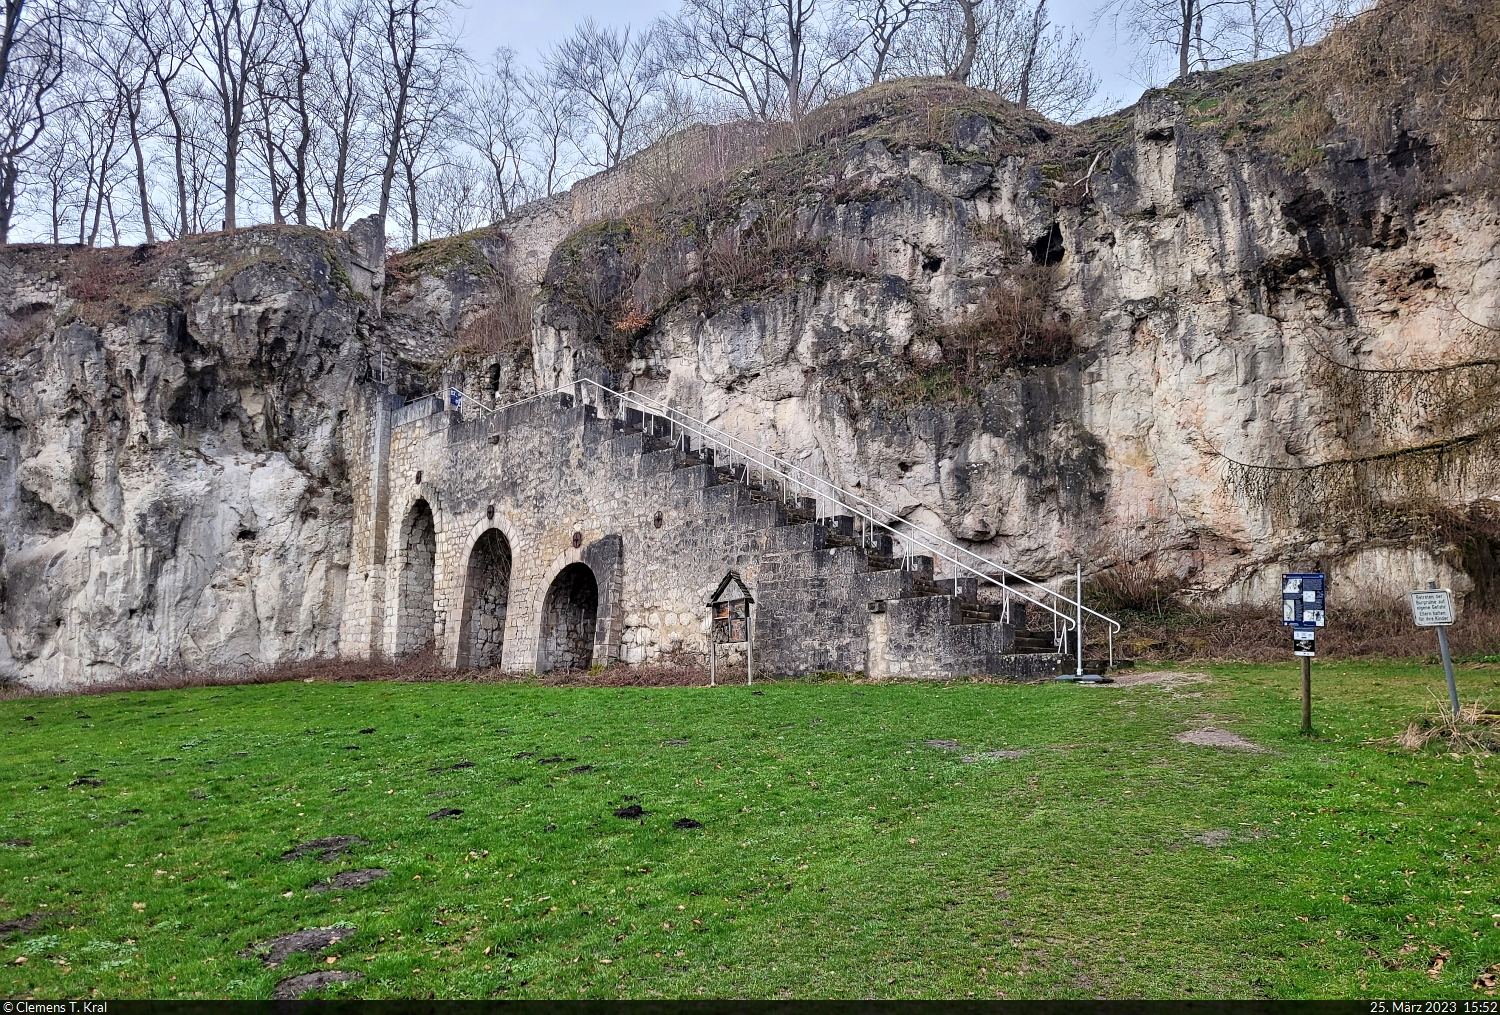 Die Burgruine Scharzfels liegt zwischen Scharzfeld und Barbis und wurde auf einem Dolomit-Felsen gebaut. Eine Treppe fhrt die Besucher auf das Areal der im 10. Jahrhundert errichteten Festung.

🕓 25.3.2023 | 15:52 Uhr